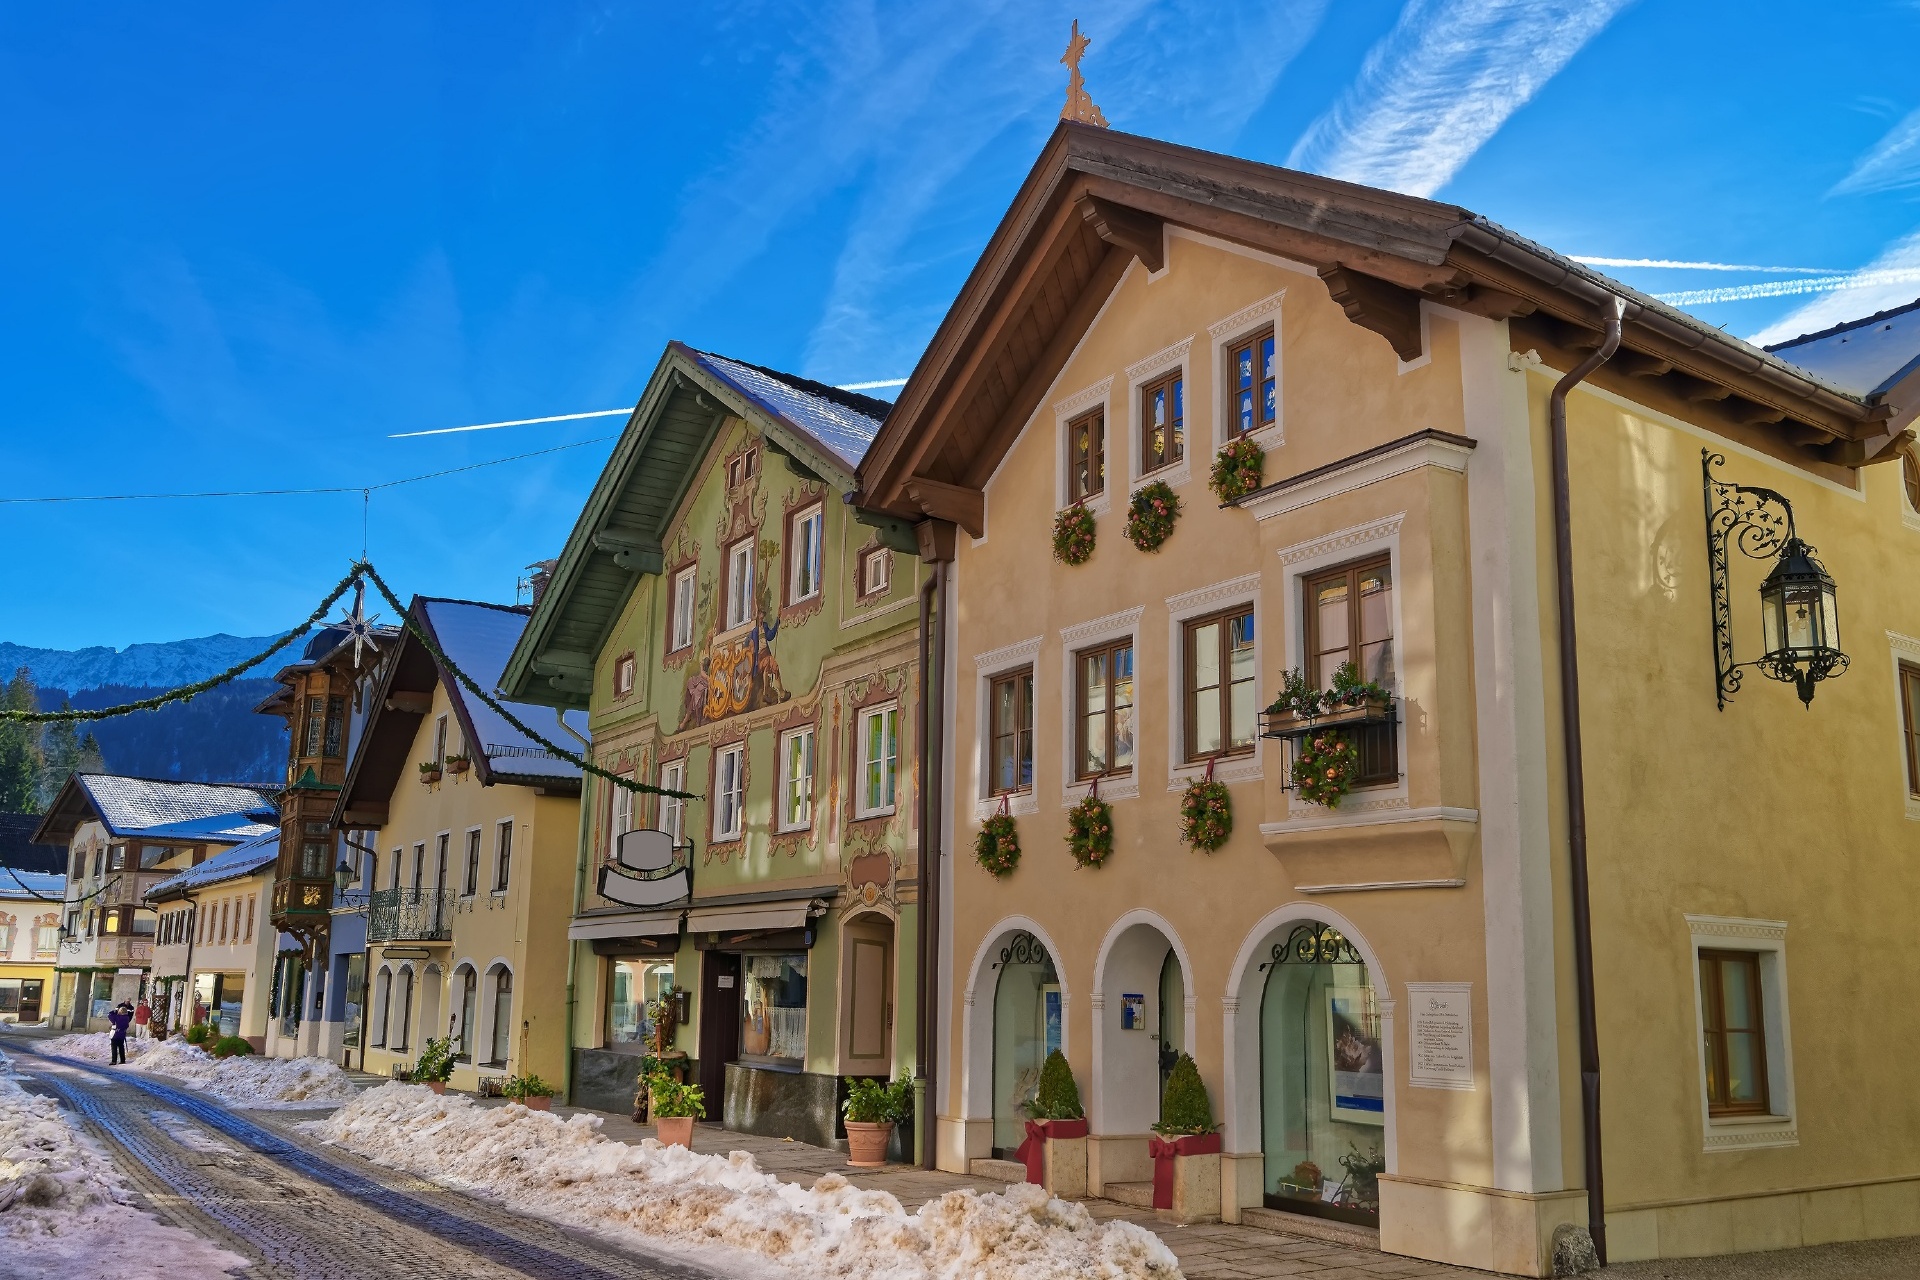 クリスマスの装飾に彩られた家々　ドイツのクリスマスの風景